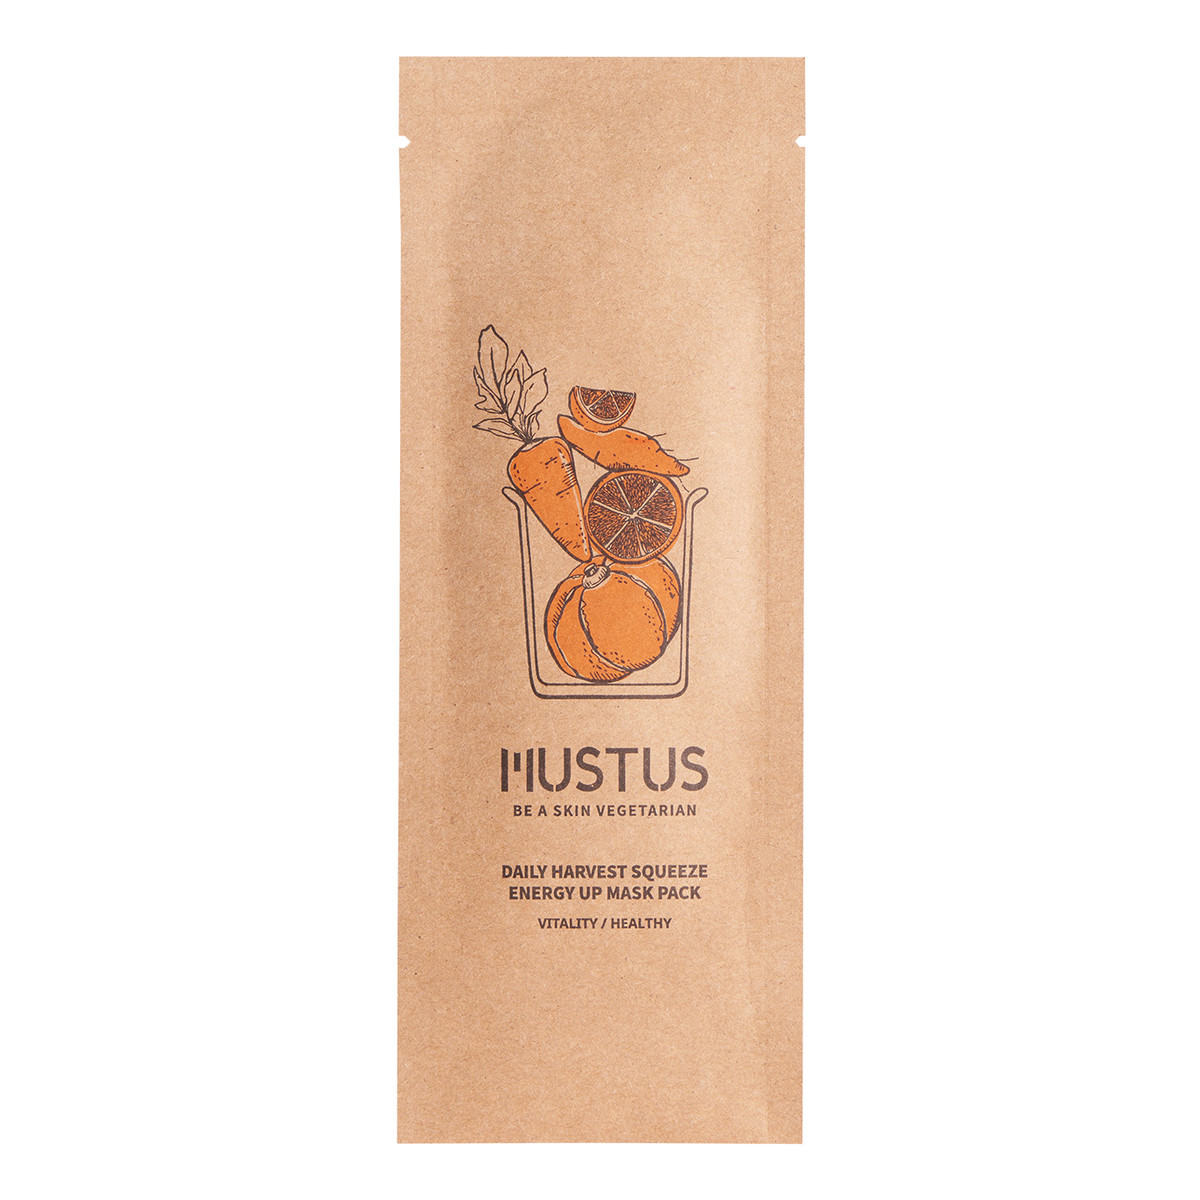 Mustus BE A SKIN VEGETARIAN! Daily Harvest Squeeze Energy Up Maseczka w płachcie wzmacniająca, stworzona na bazie kompleksu ekstraktów z pomarańczowych warzyw i owoców 20g